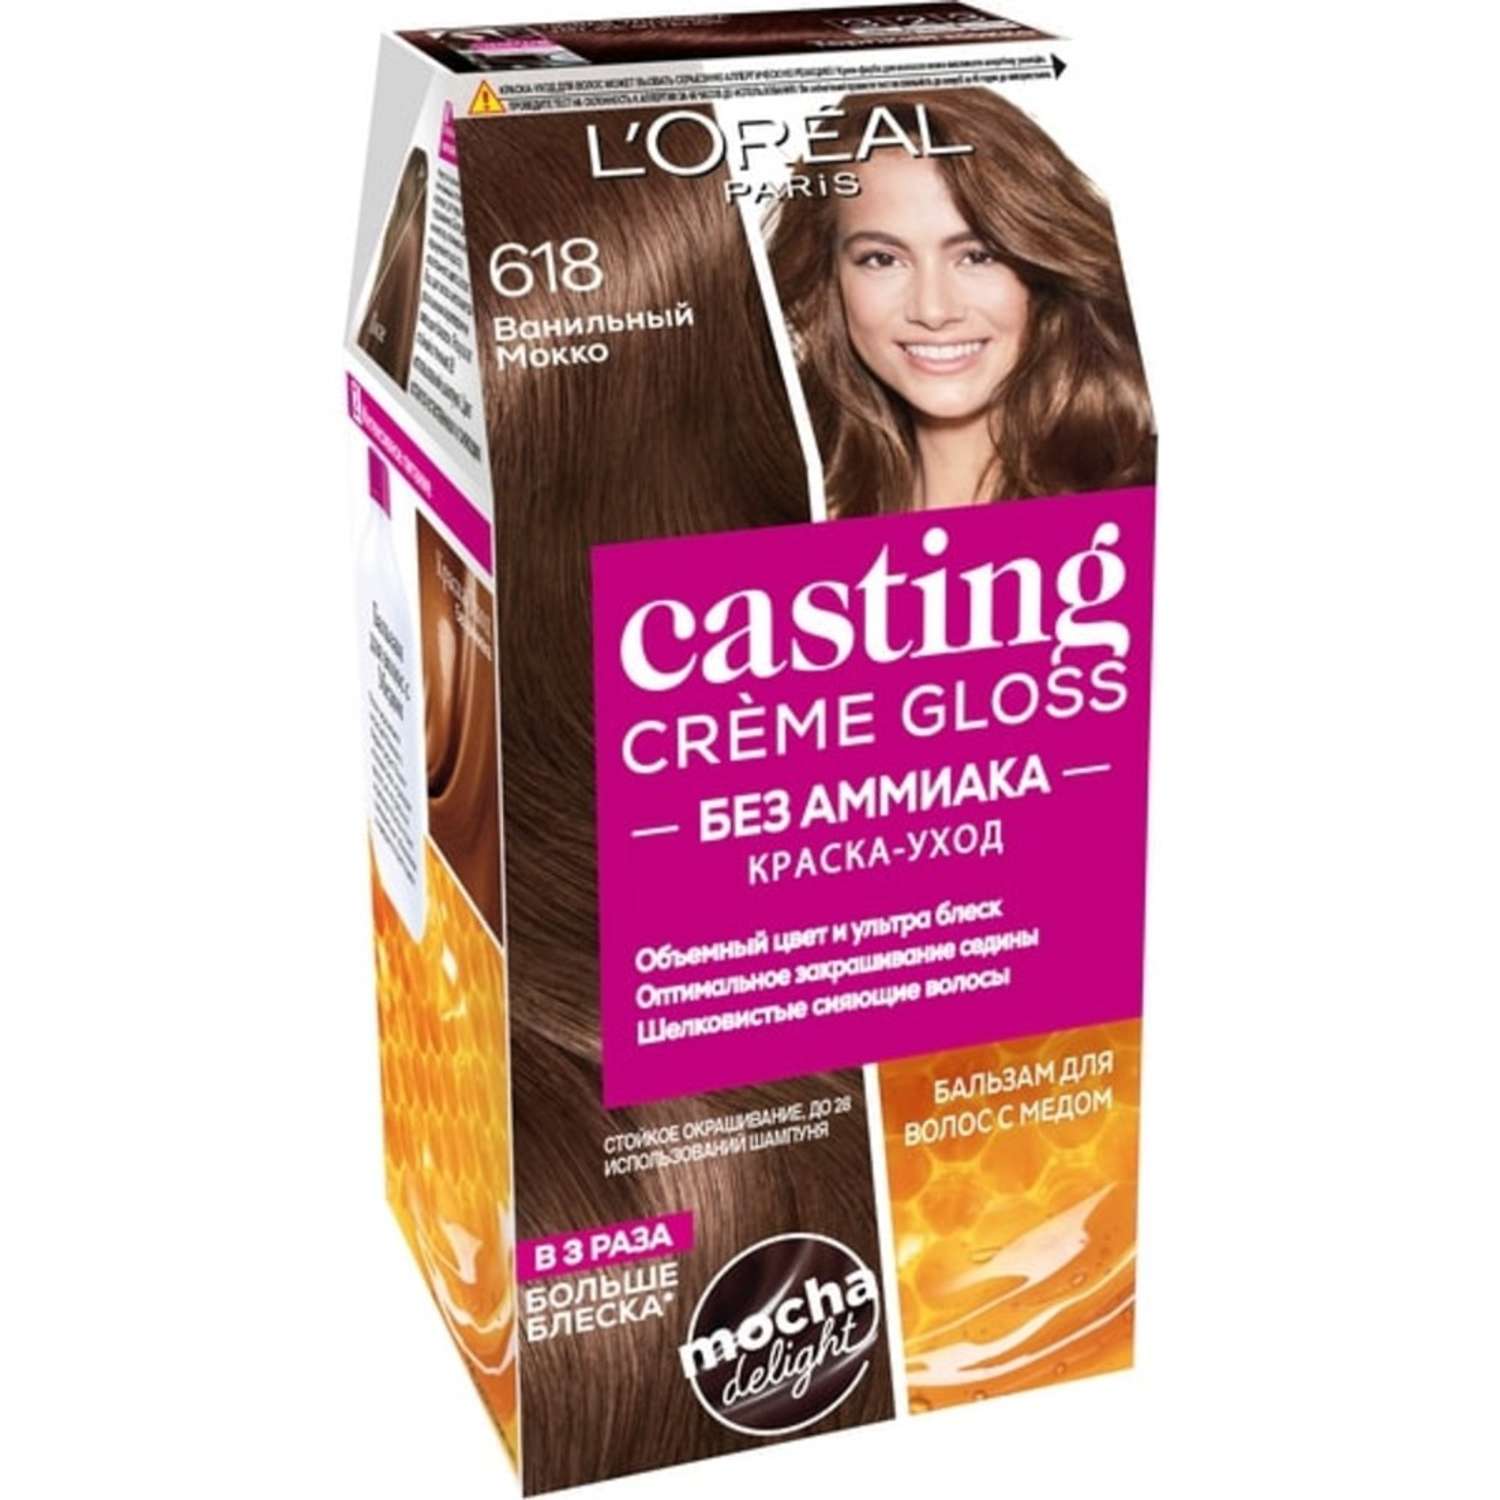 Краска для волос LOREAL Casting Creme Gloss без аммиака оттенок 618 Ванильный Мокко - фото 1